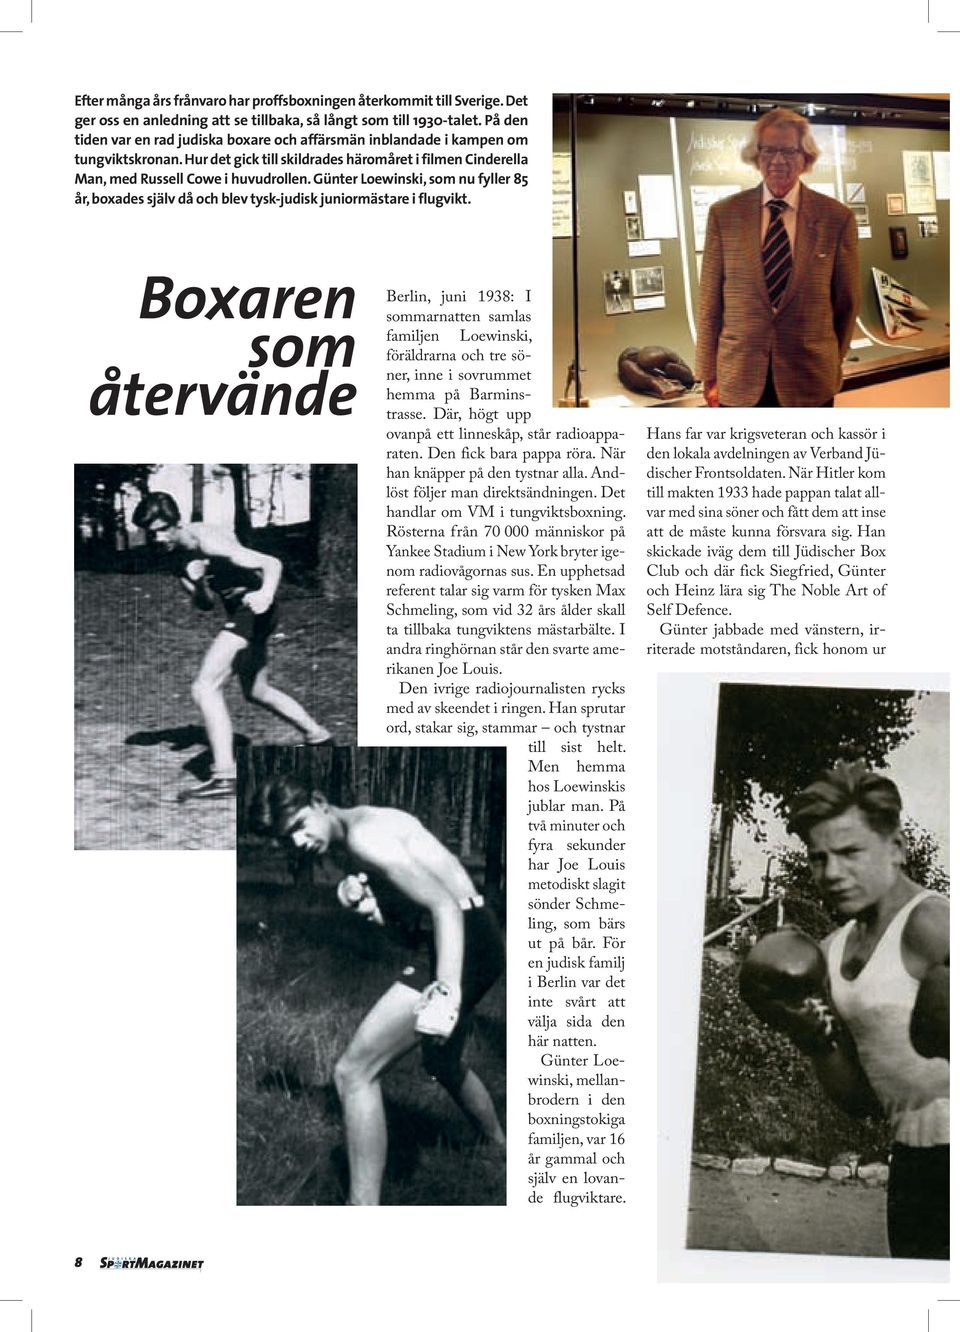 Günter Loewinski, som nu fyller 85 år, boxades själv då och blev tysk-judisk juniormästare i flugvikt.